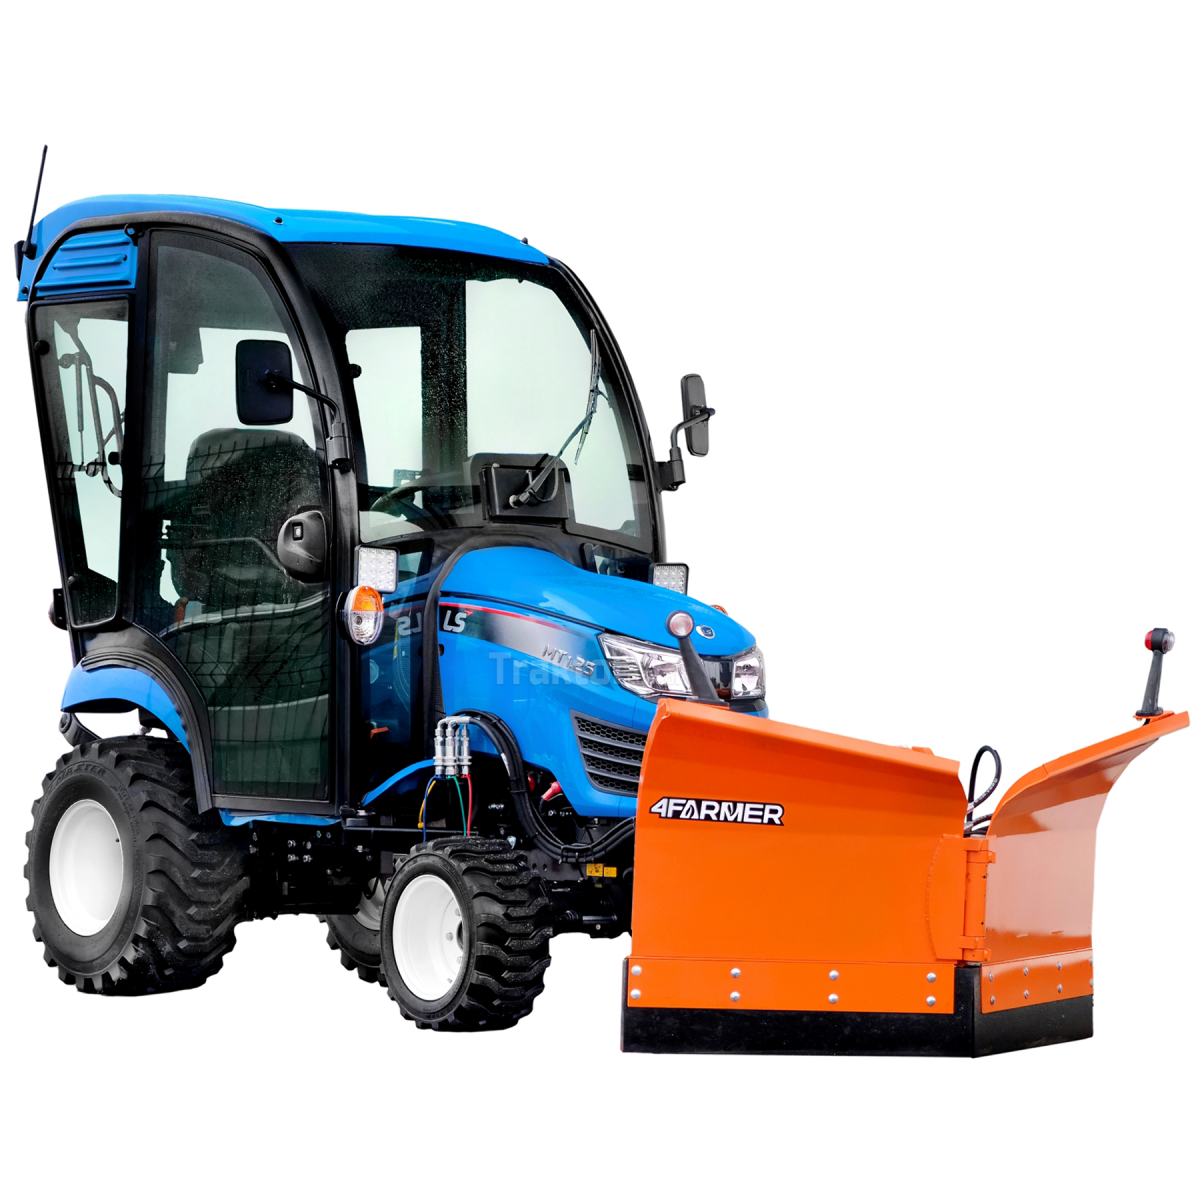 LS Traktor MT1,25 4x4 - 24,7 HP / KABINA / IND + Vario šípový sněhový pluh 150 cm, hydraulický (TUZ) 4FARMER